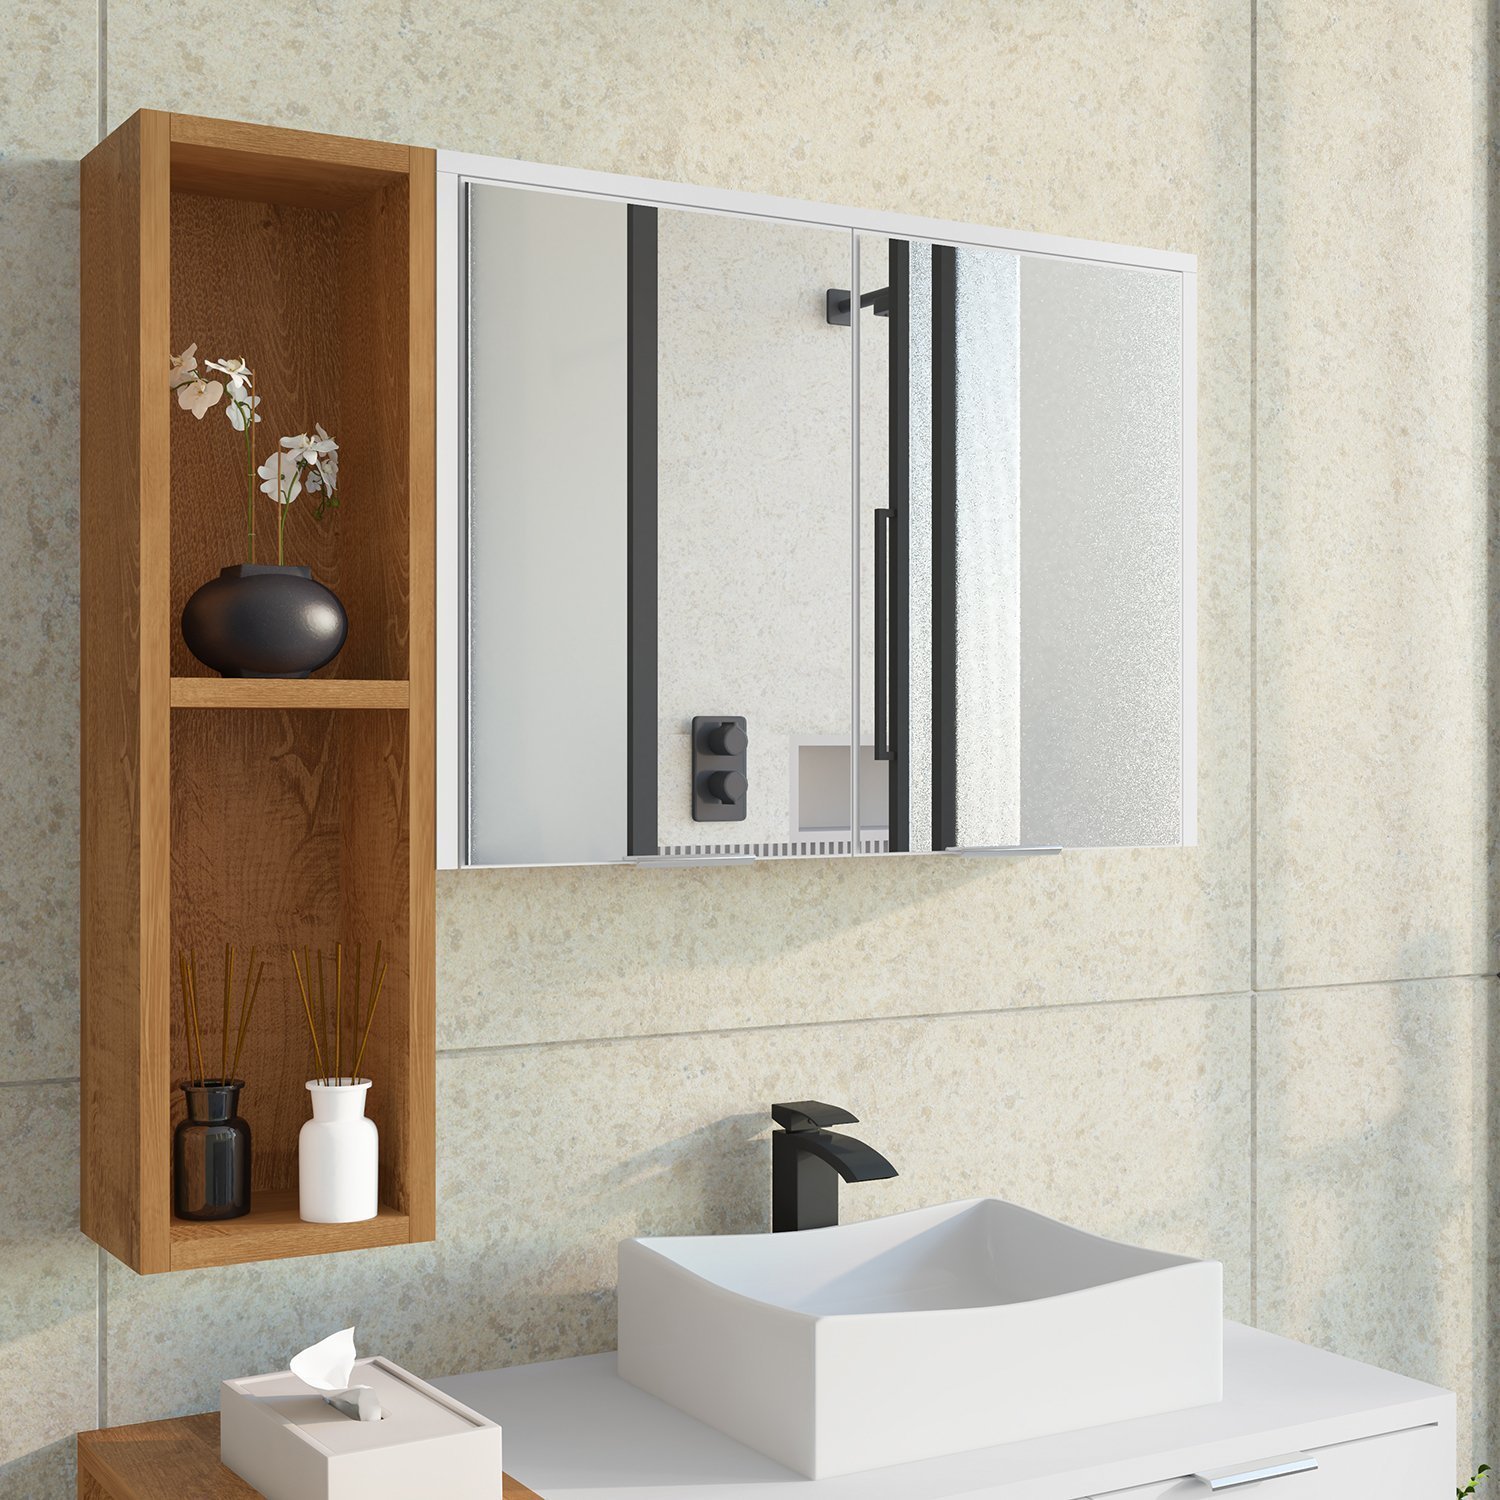 Espelheira Para Banheiro Ibiza 2 Portas com Espelho Nicho Multifuncional Puxador de Alumínio - 1